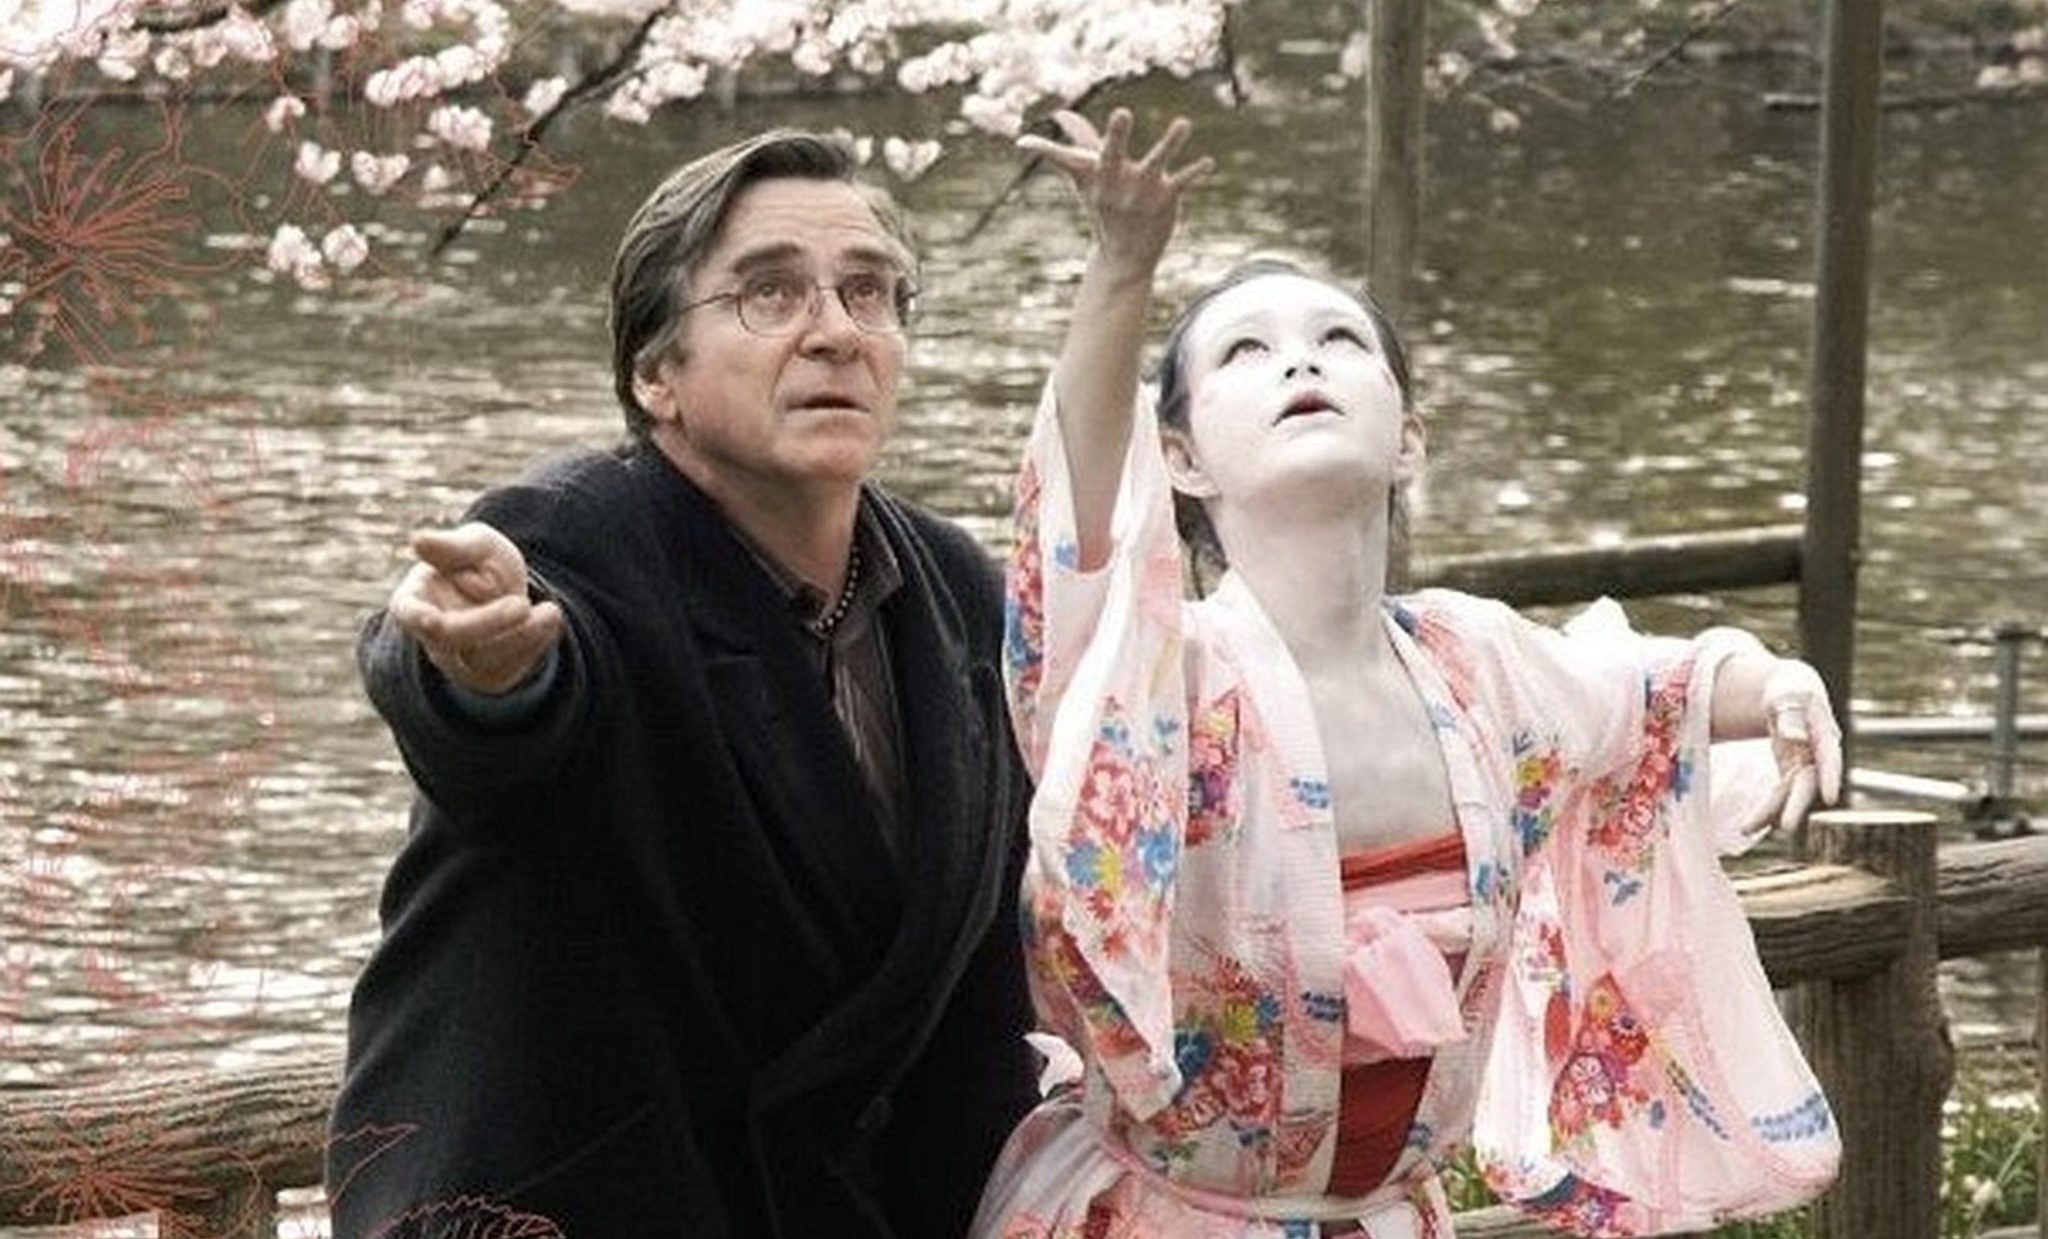 دانلود فیلم Cherry Blossoms 2008